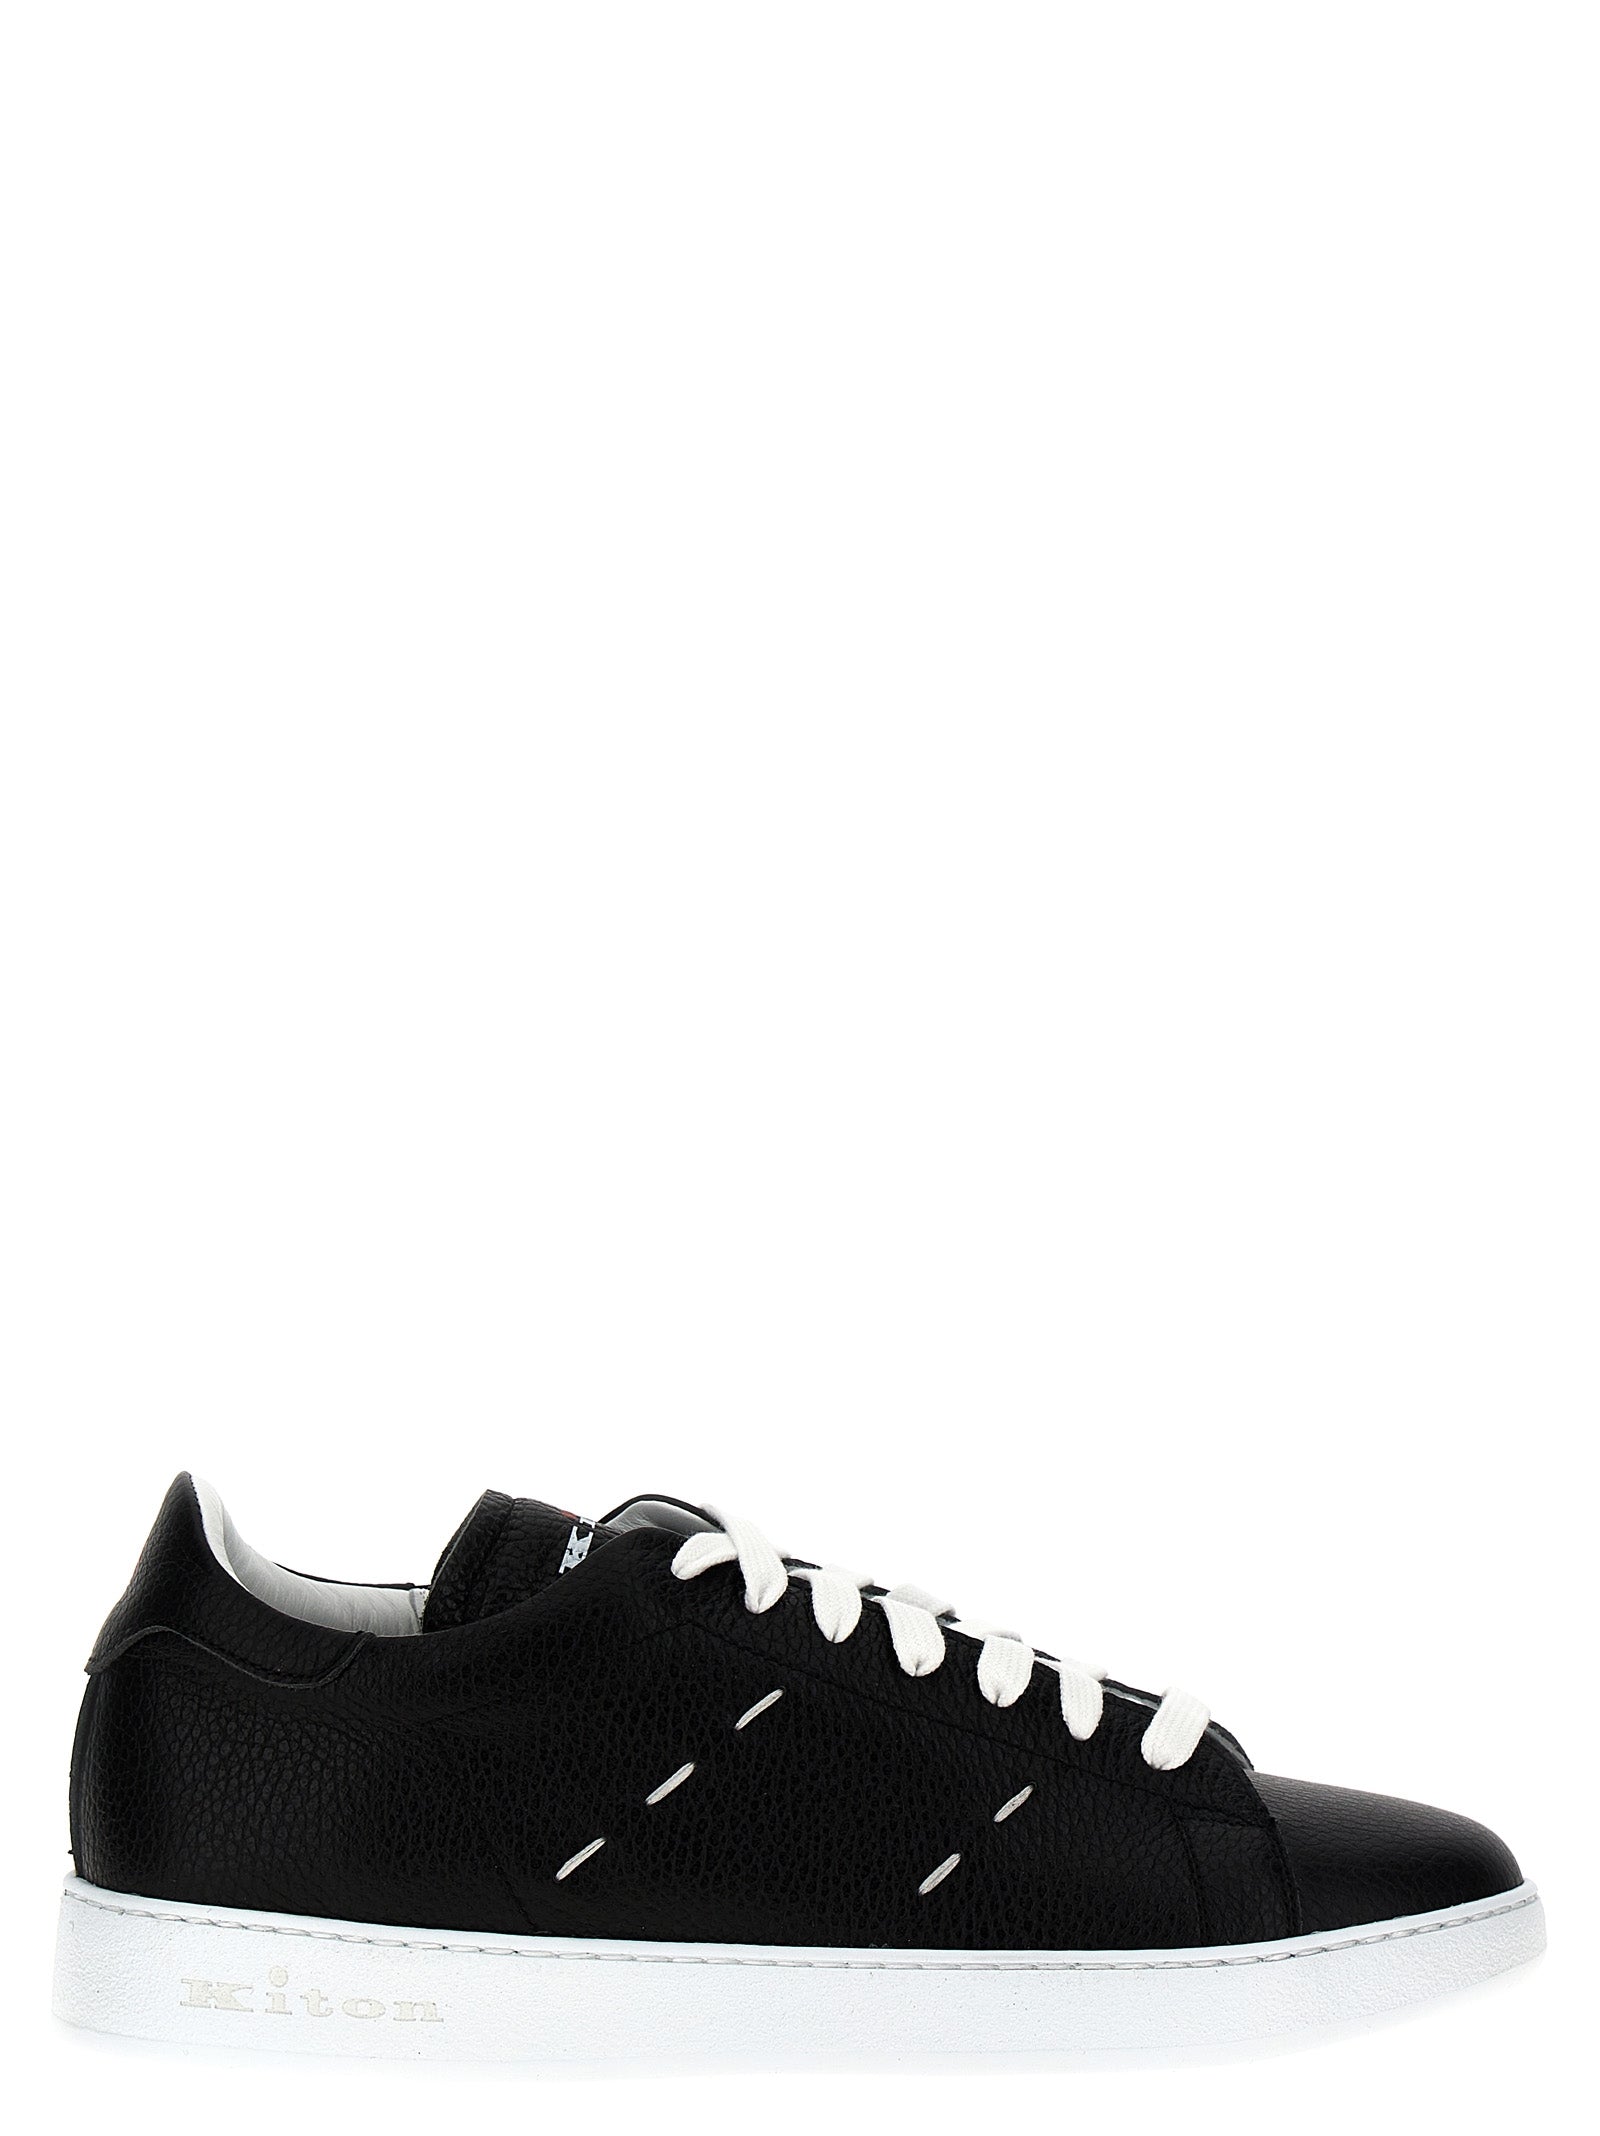 Kiton Leather Sneakers Black